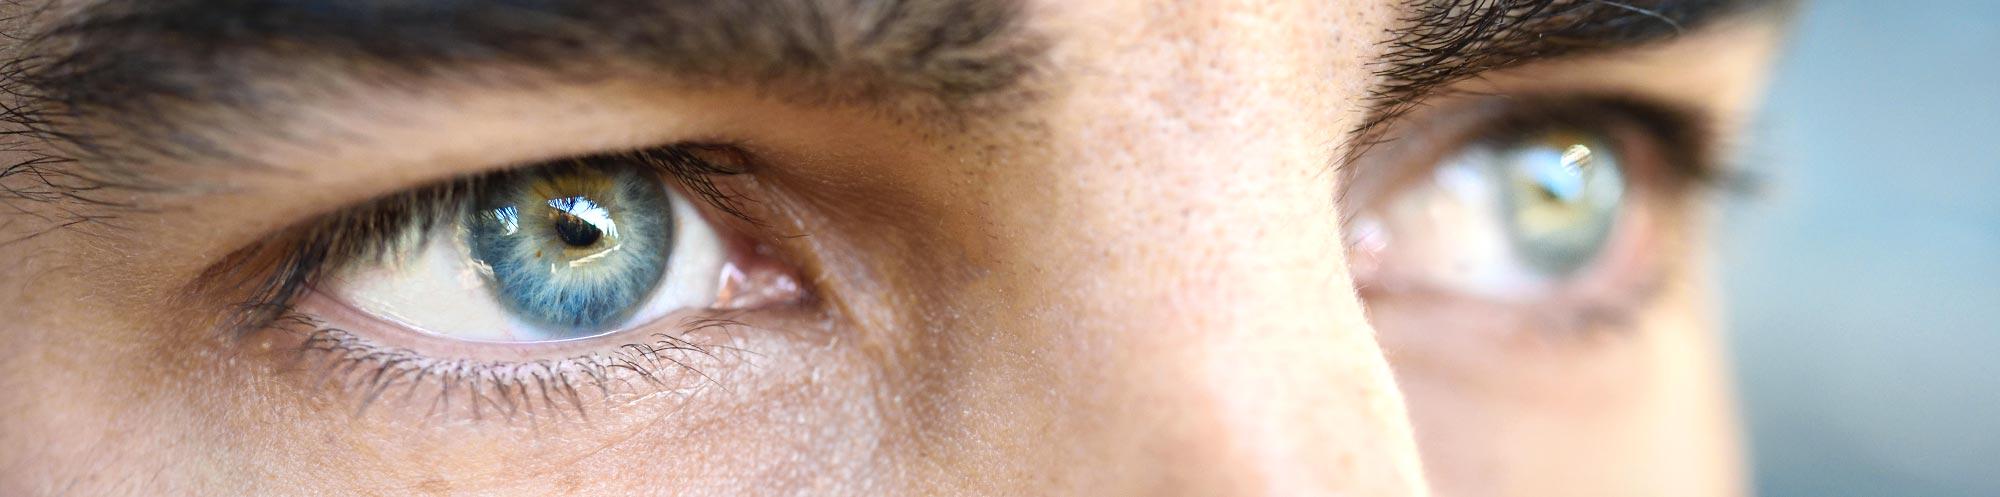 Netzhauterkrankungen - Augenarztpraxis Buchen